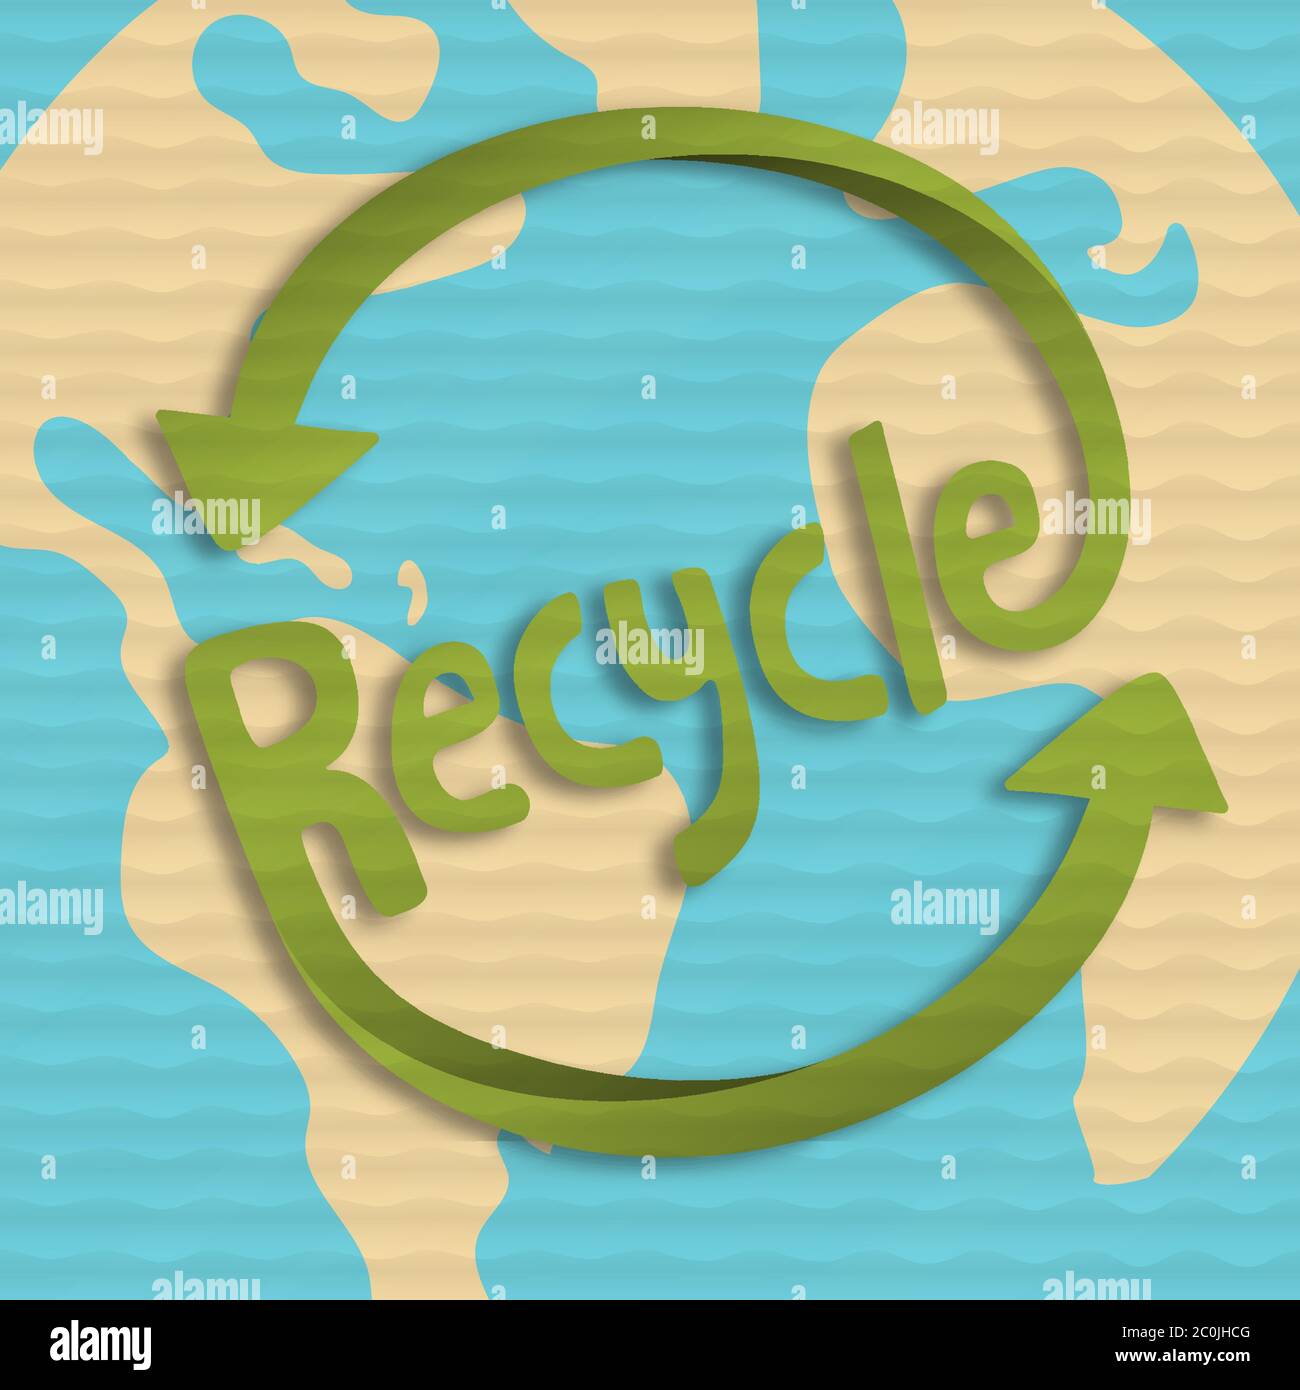 Recycling Symbol Illustration mit grüner Erde Planeten Karte in Papercut Papptextur. Umwelt Hilfekonzept für Recycling-Aktivitäten. Stock Vektor